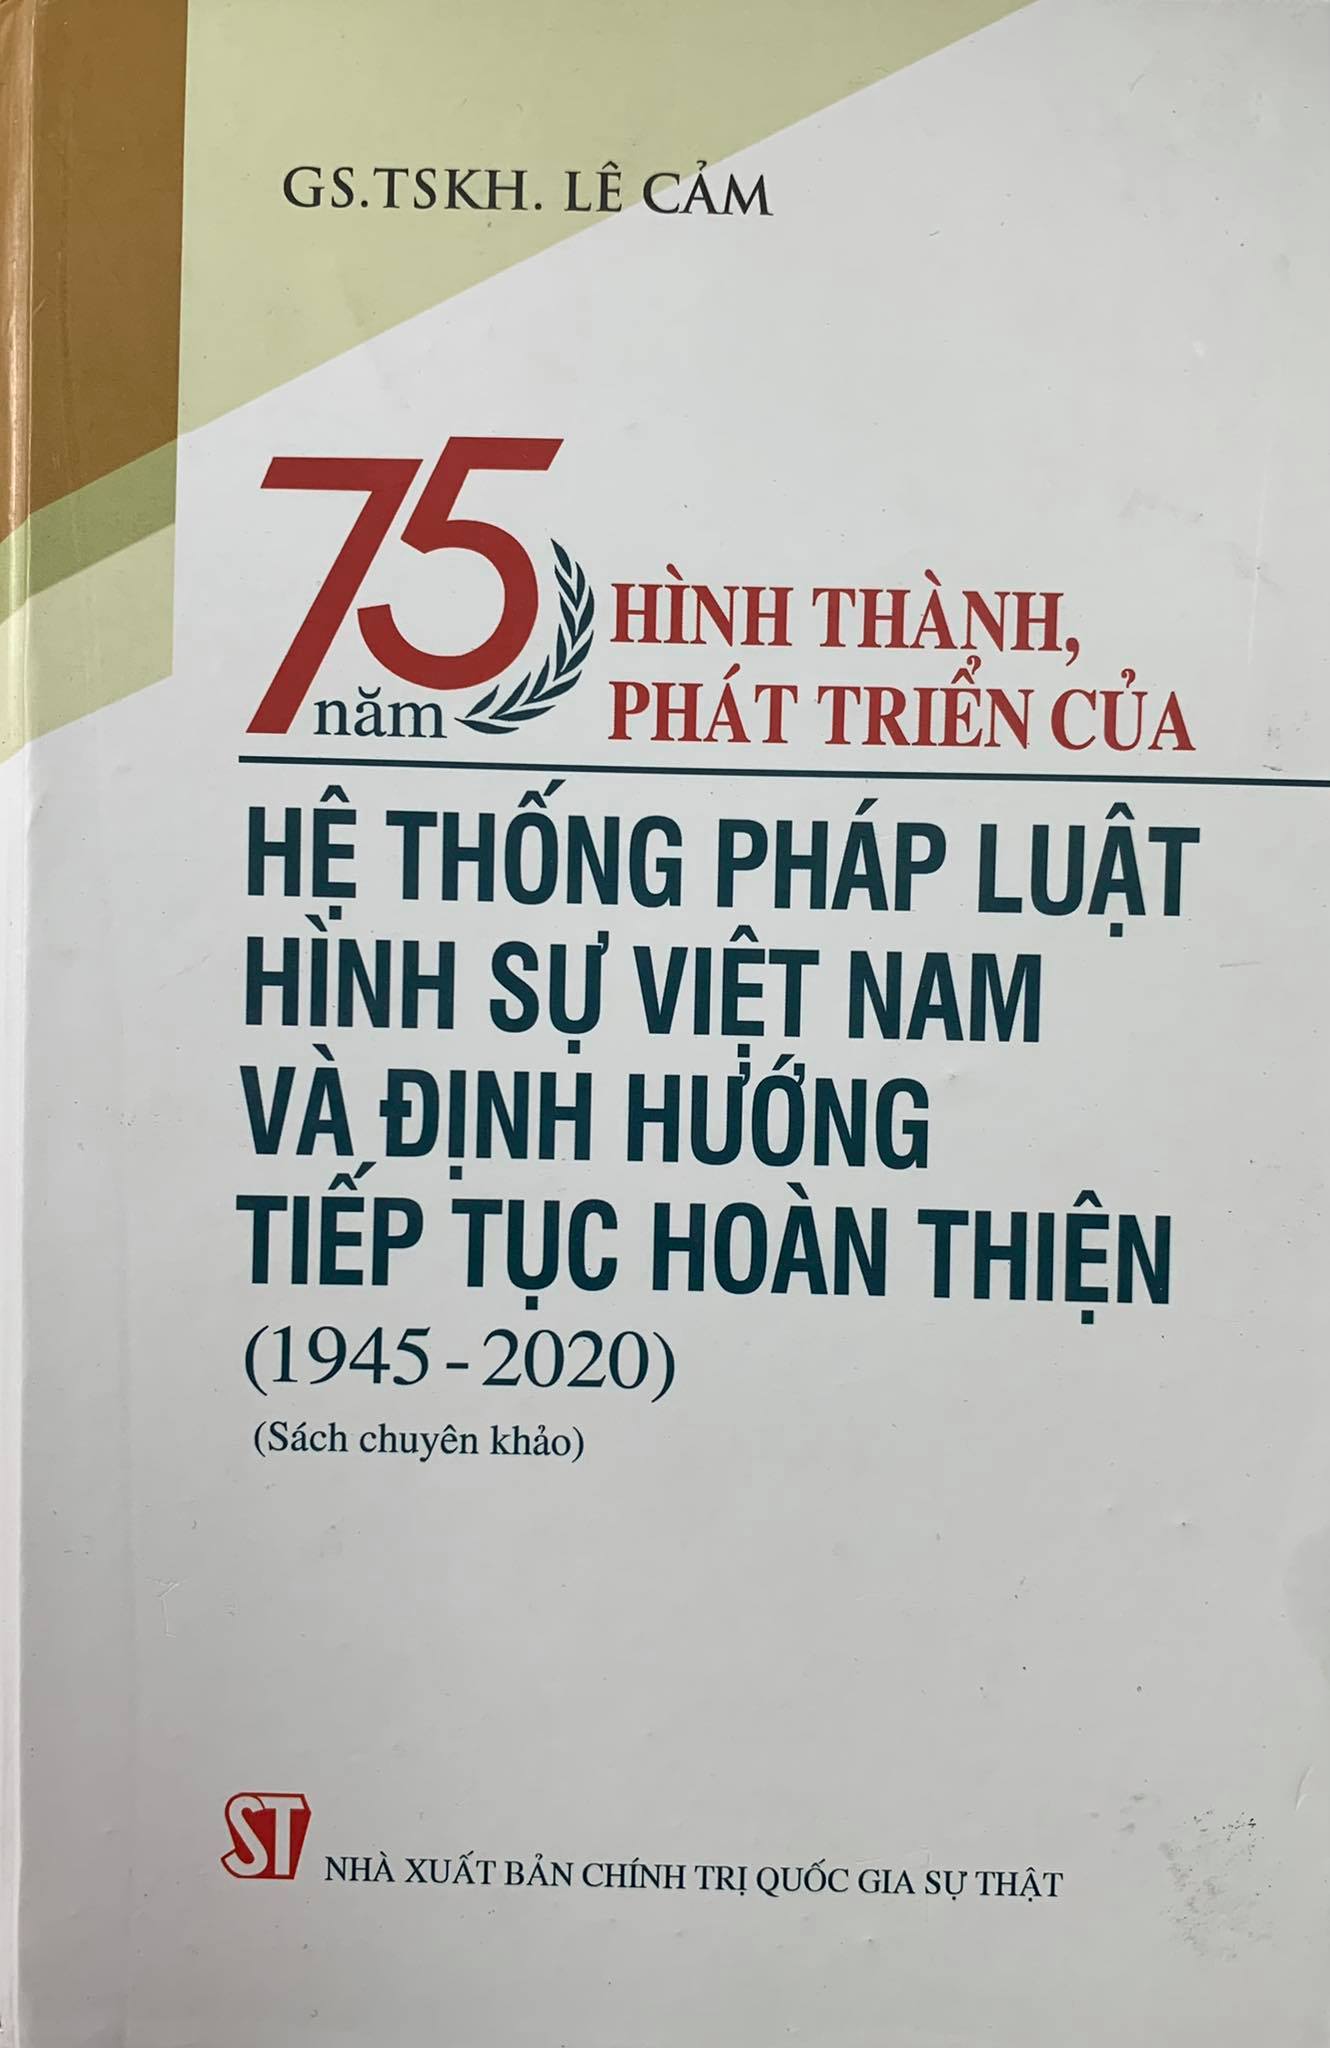 75 năm hình thành, phát triển của Hệ thống pháp luật hình sự Việt Nam và định hướng tiếp tục hoàn thiện (1945 - 2020) (Sách chuyên khảo)